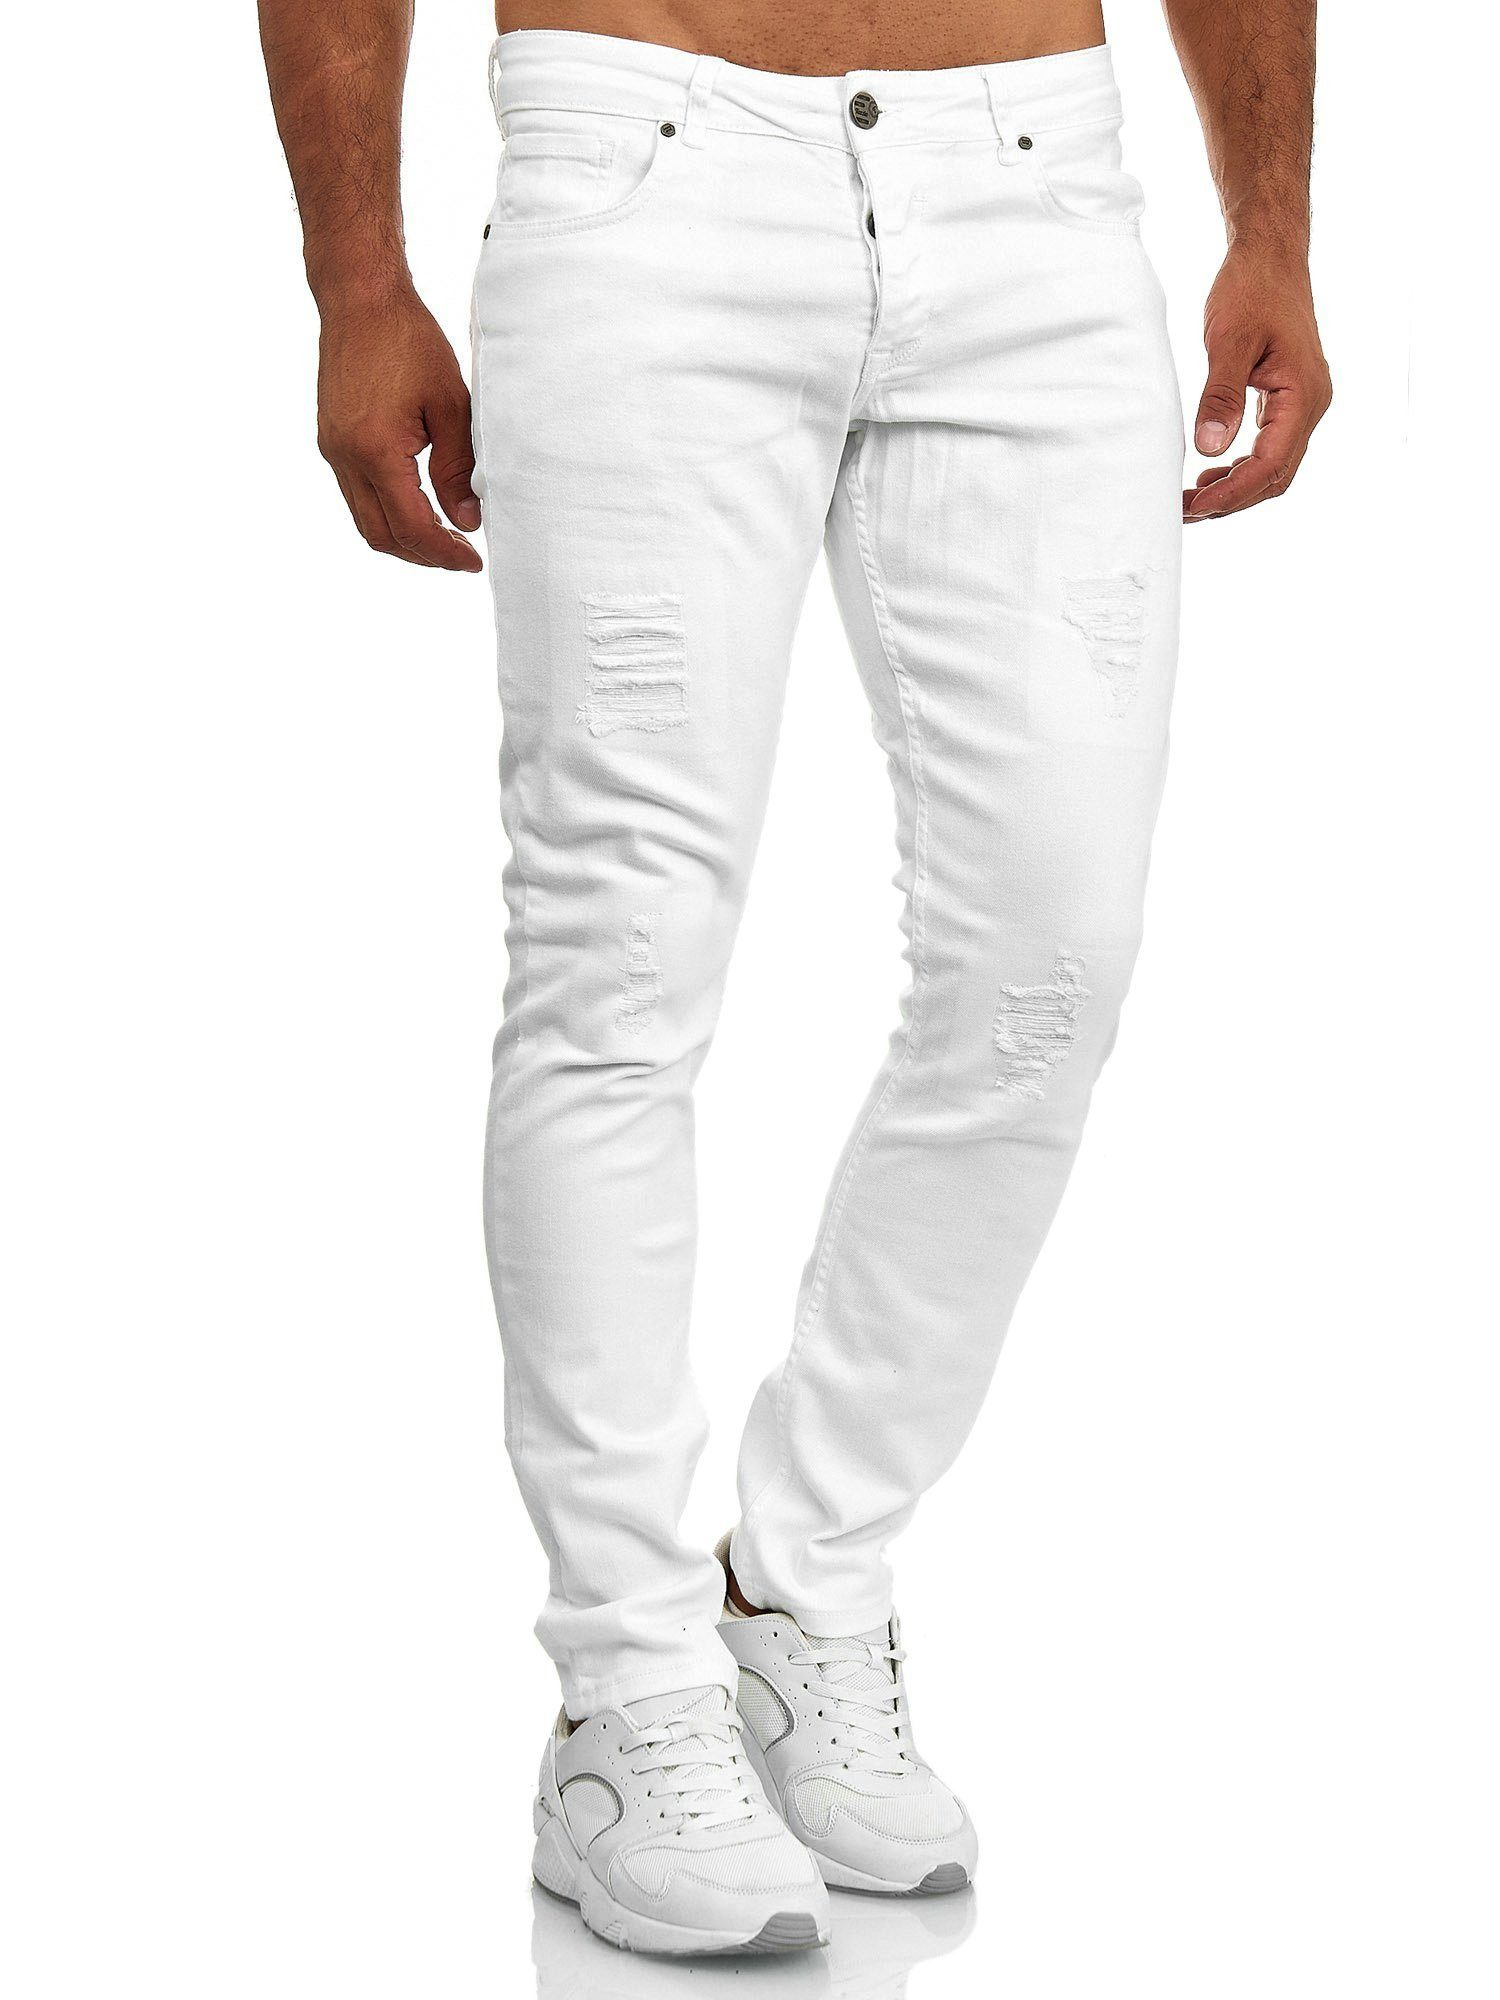 Herren Jeans in weiß online kaufen | OTTO